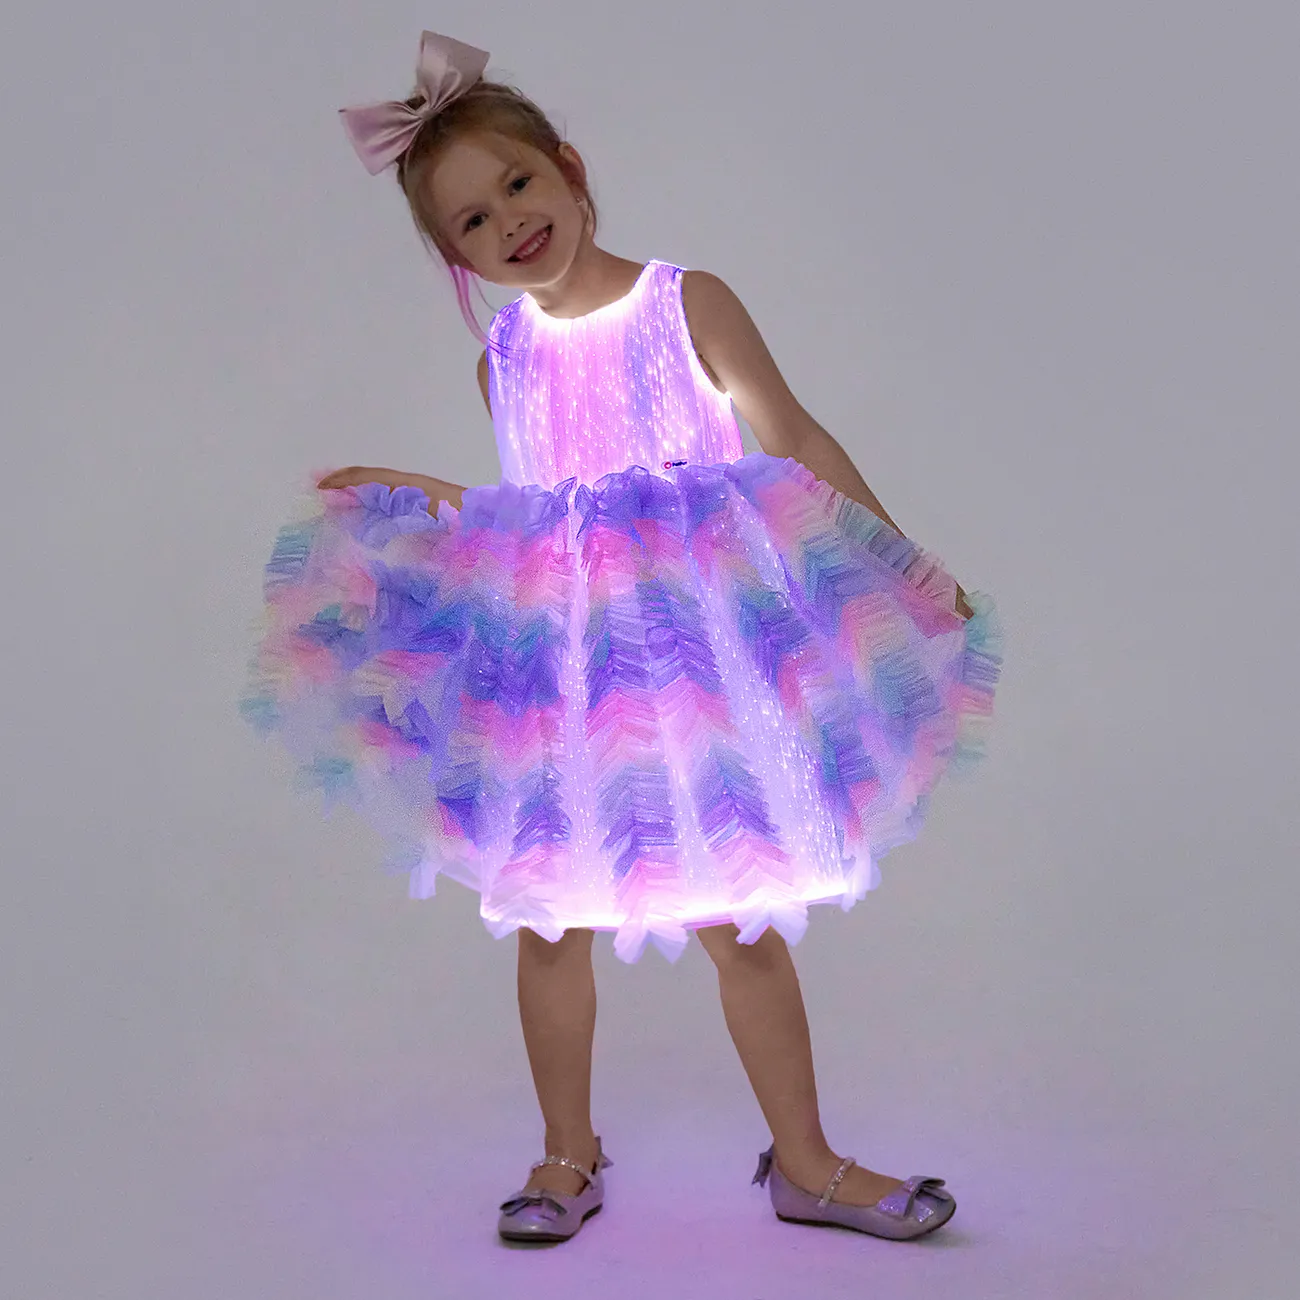 Go-Glow Light Up Robe de fête de princesse colorée avec jupe à volants, y compris le contrôleur (batterie intégrée) Multicolore big image 1